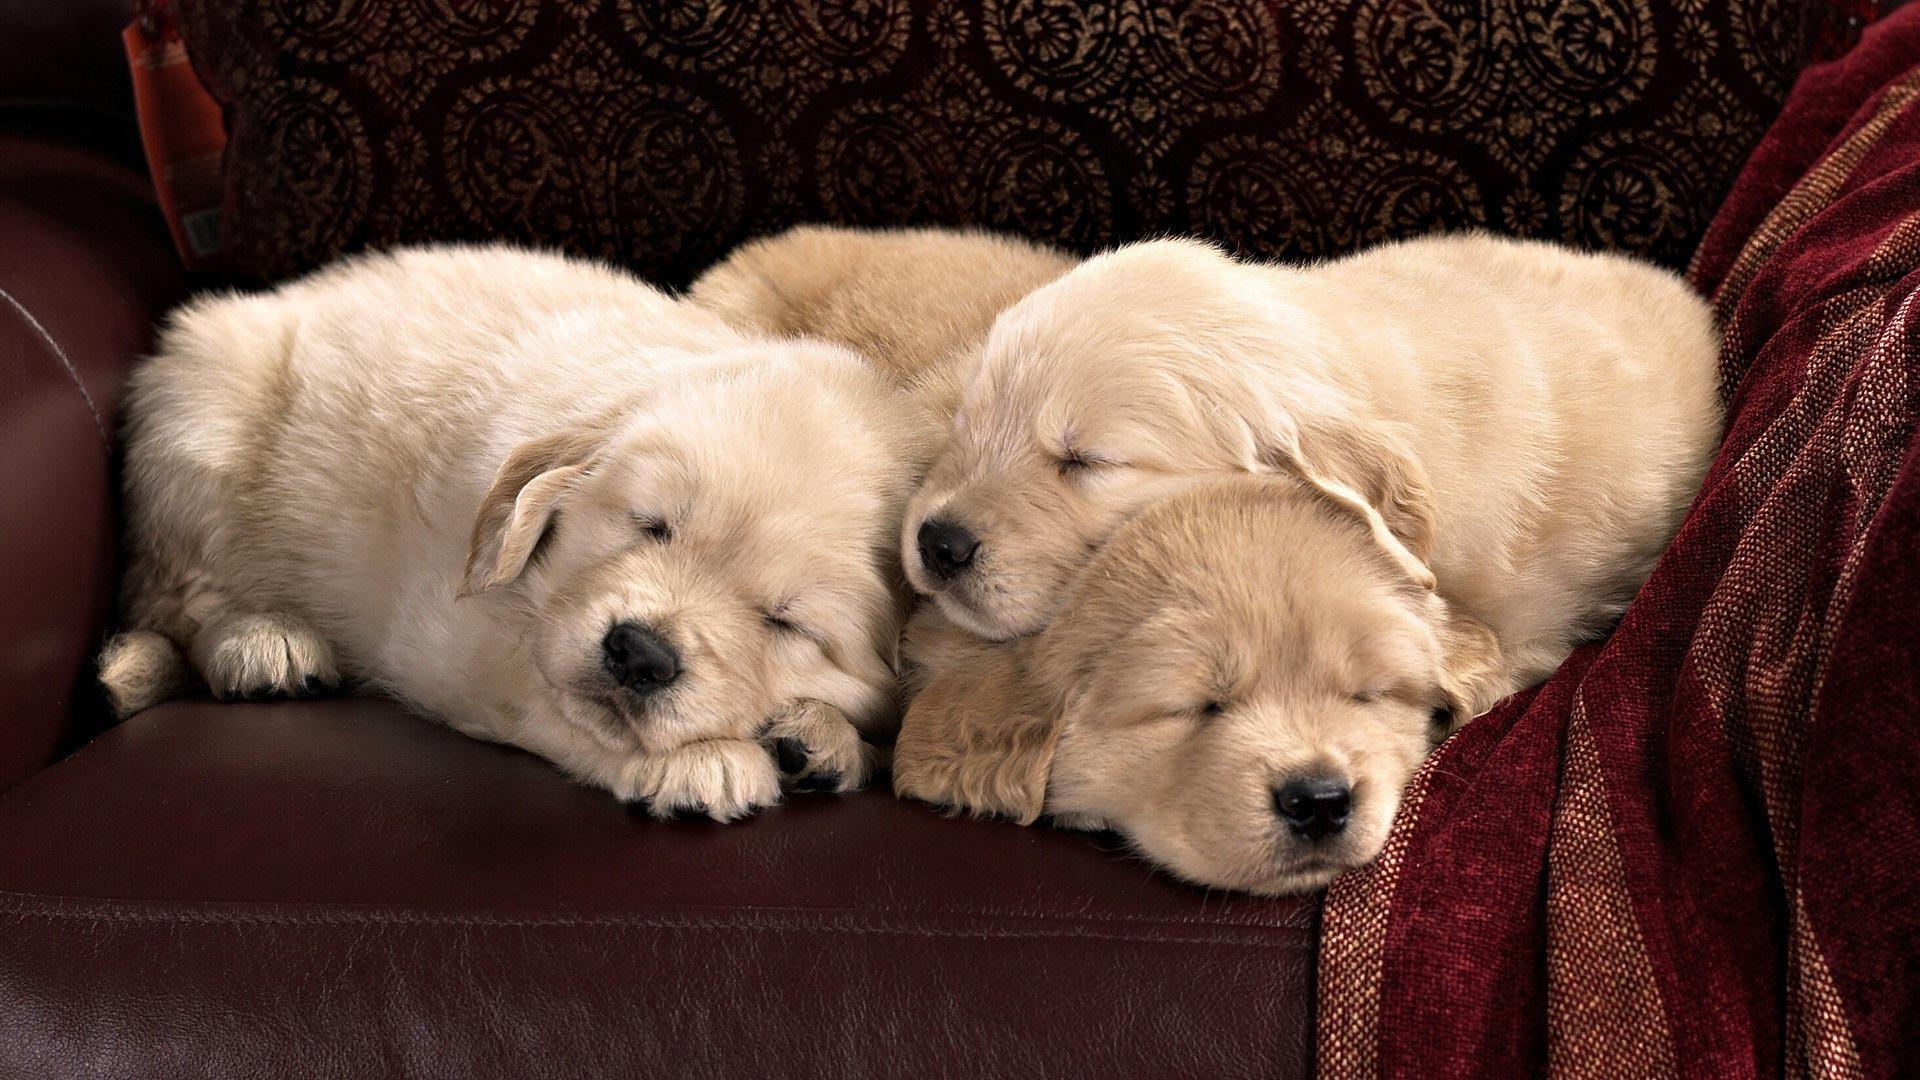 HD Sleeping Golden Retriever Puppies Wallpaper